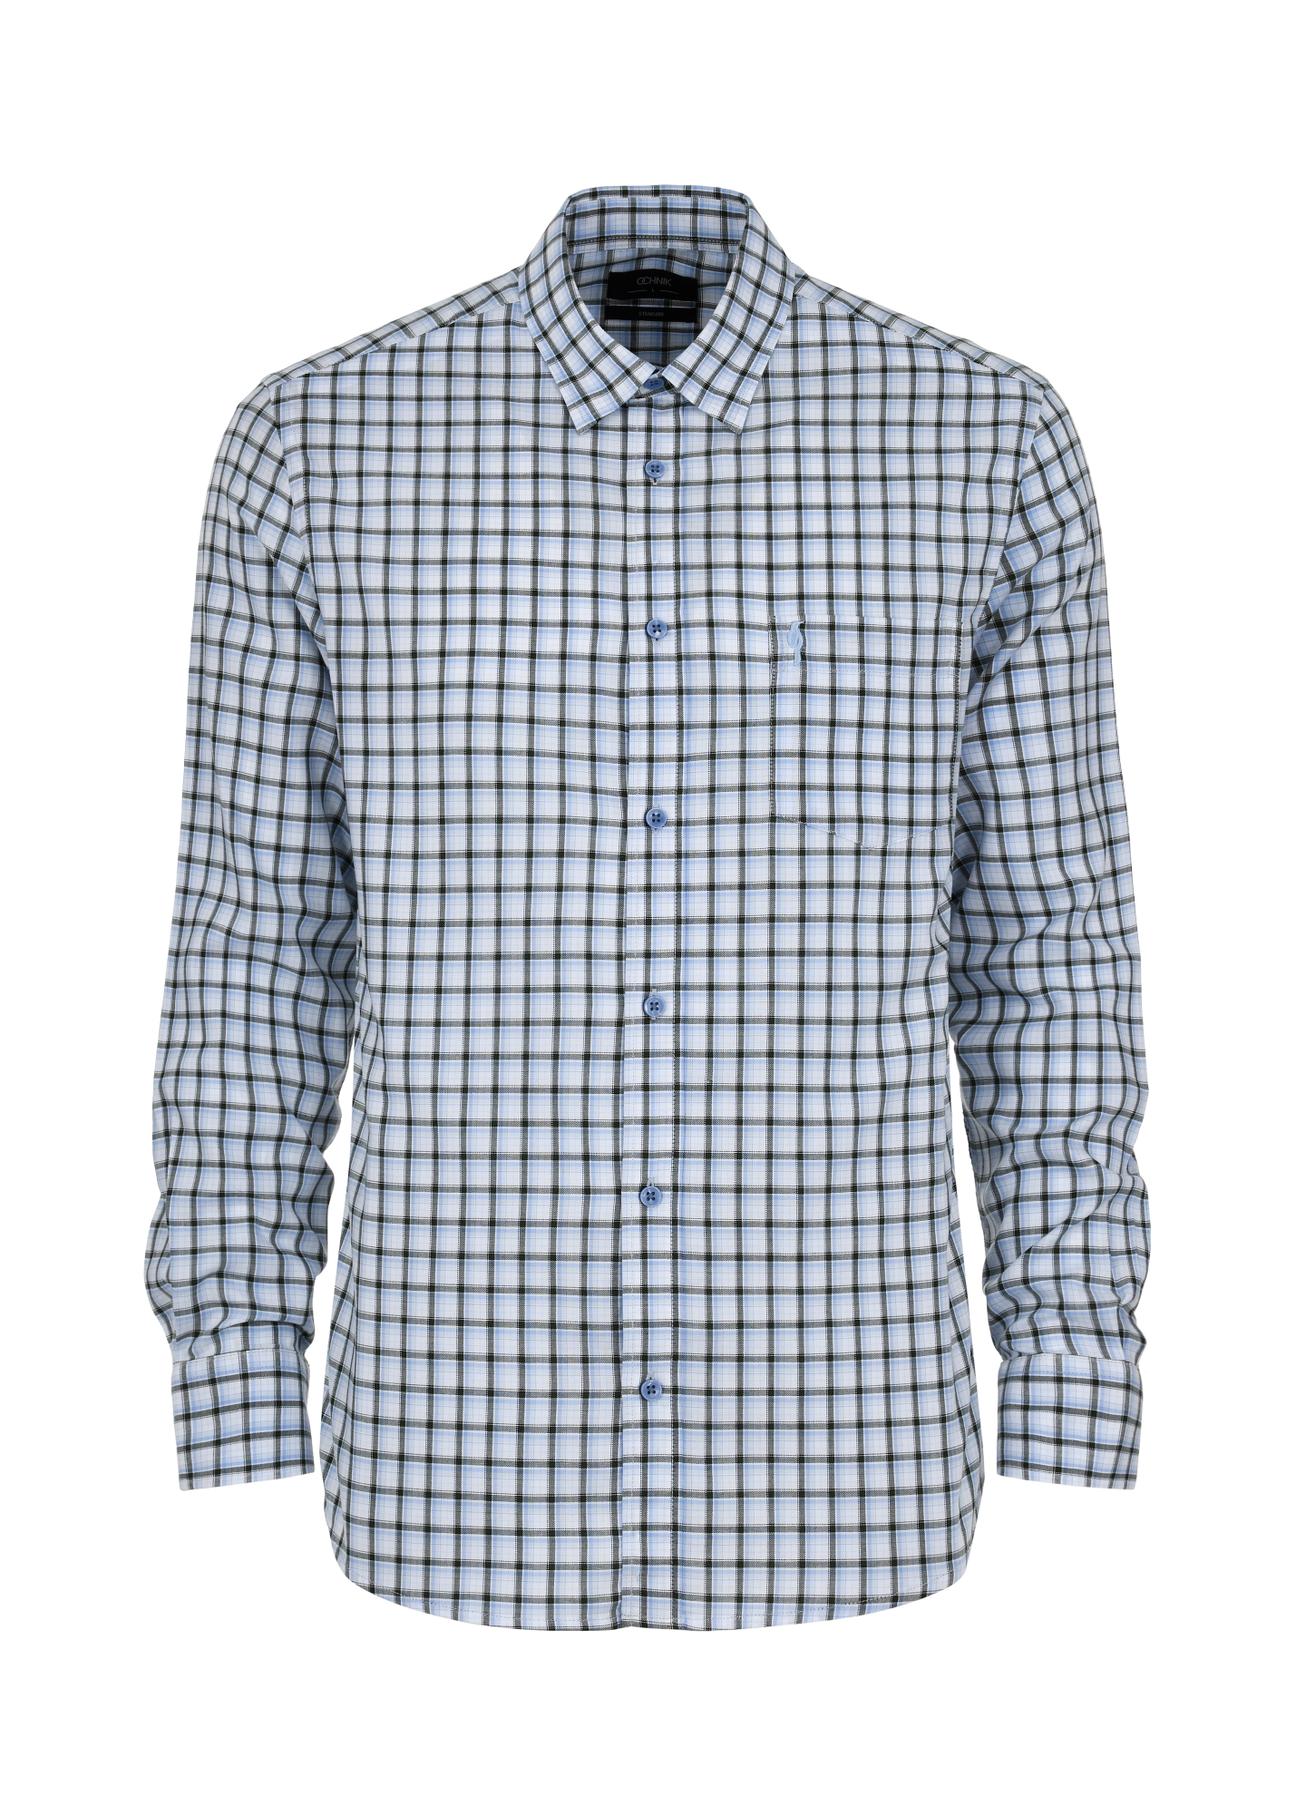 Niebiesko-zielona koszula męska w kratę KOSMT-0325-62(W24)